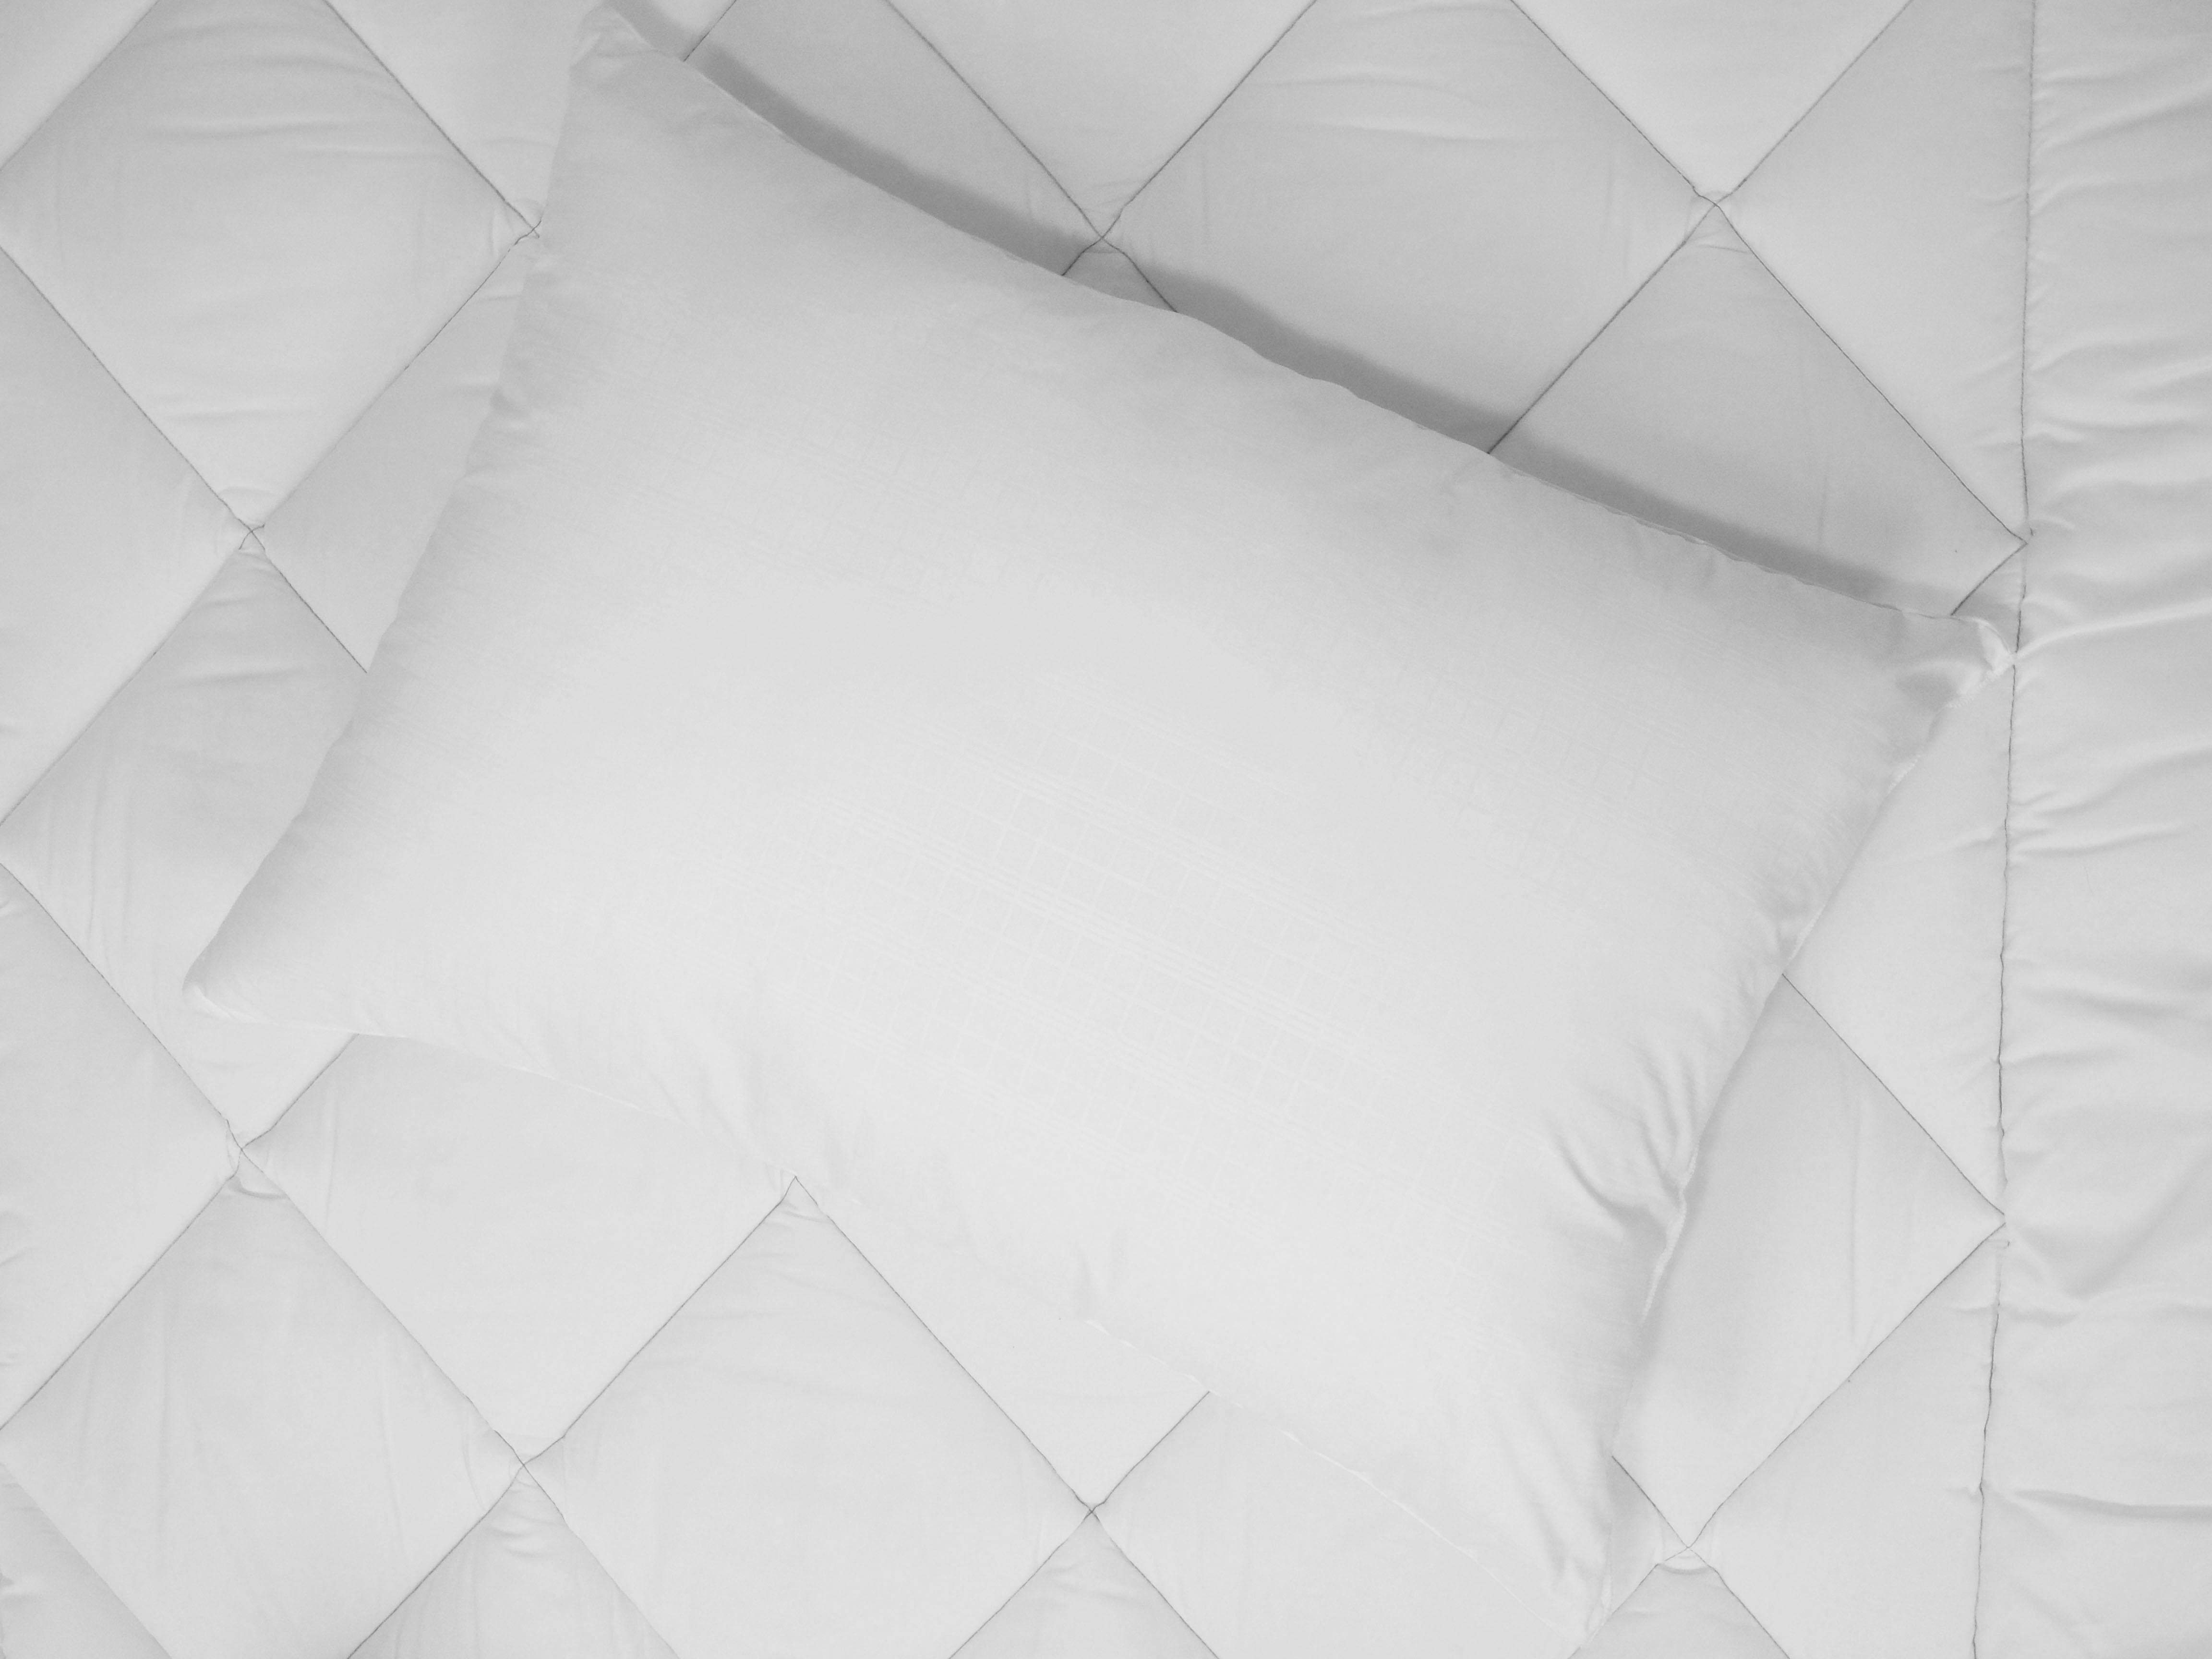 Mainstays Comfort Complete Bed Pillow, Standard/Queen - image 5 of 5